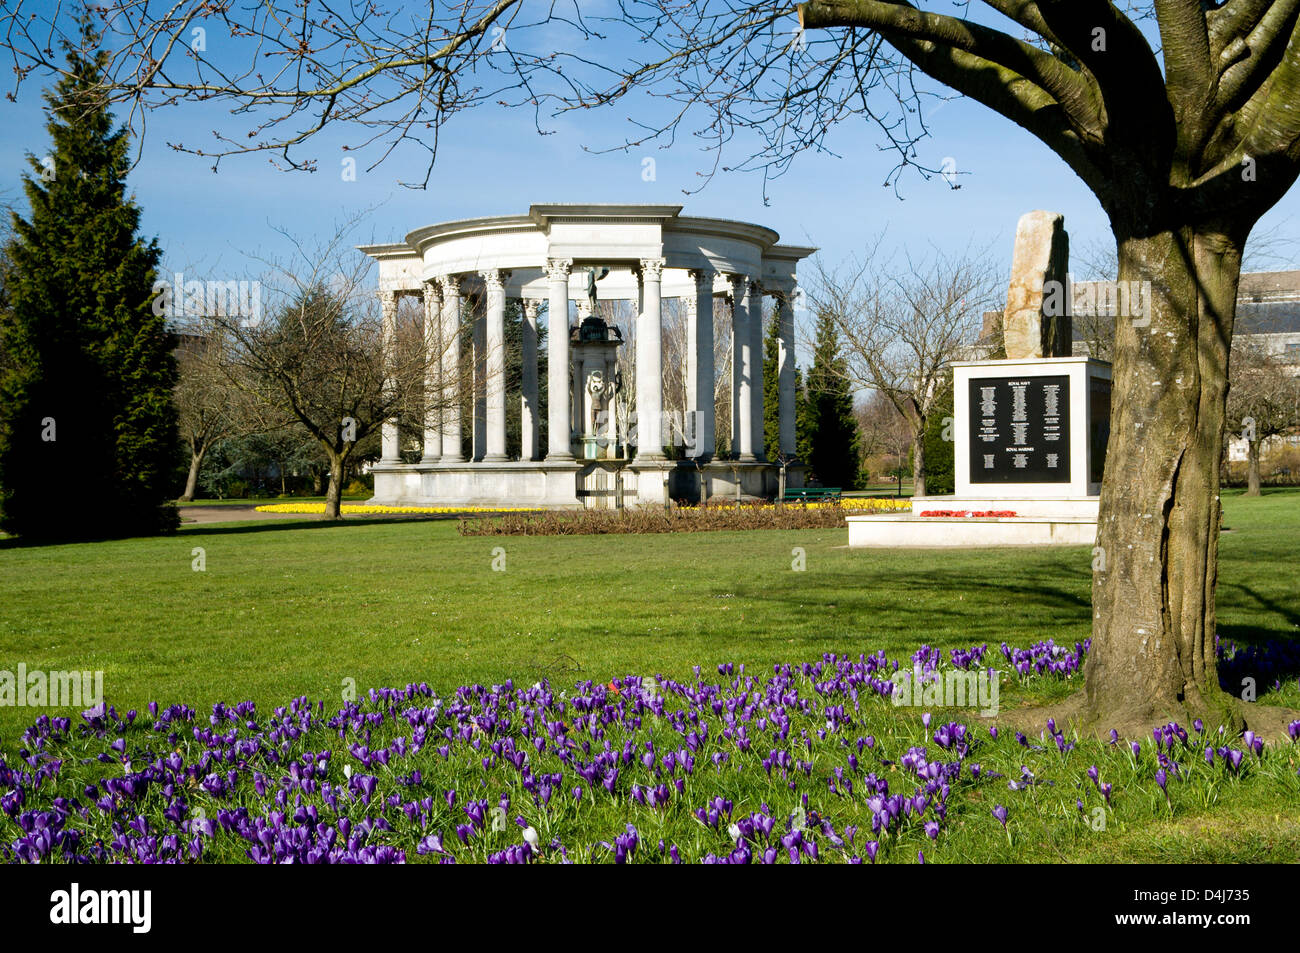 Monument commémoratif de la guerre des Malouines et War Memorial, Alexandra Gardens, Cathays Park, Cardiff, Pays de Galles. Banque D'Images